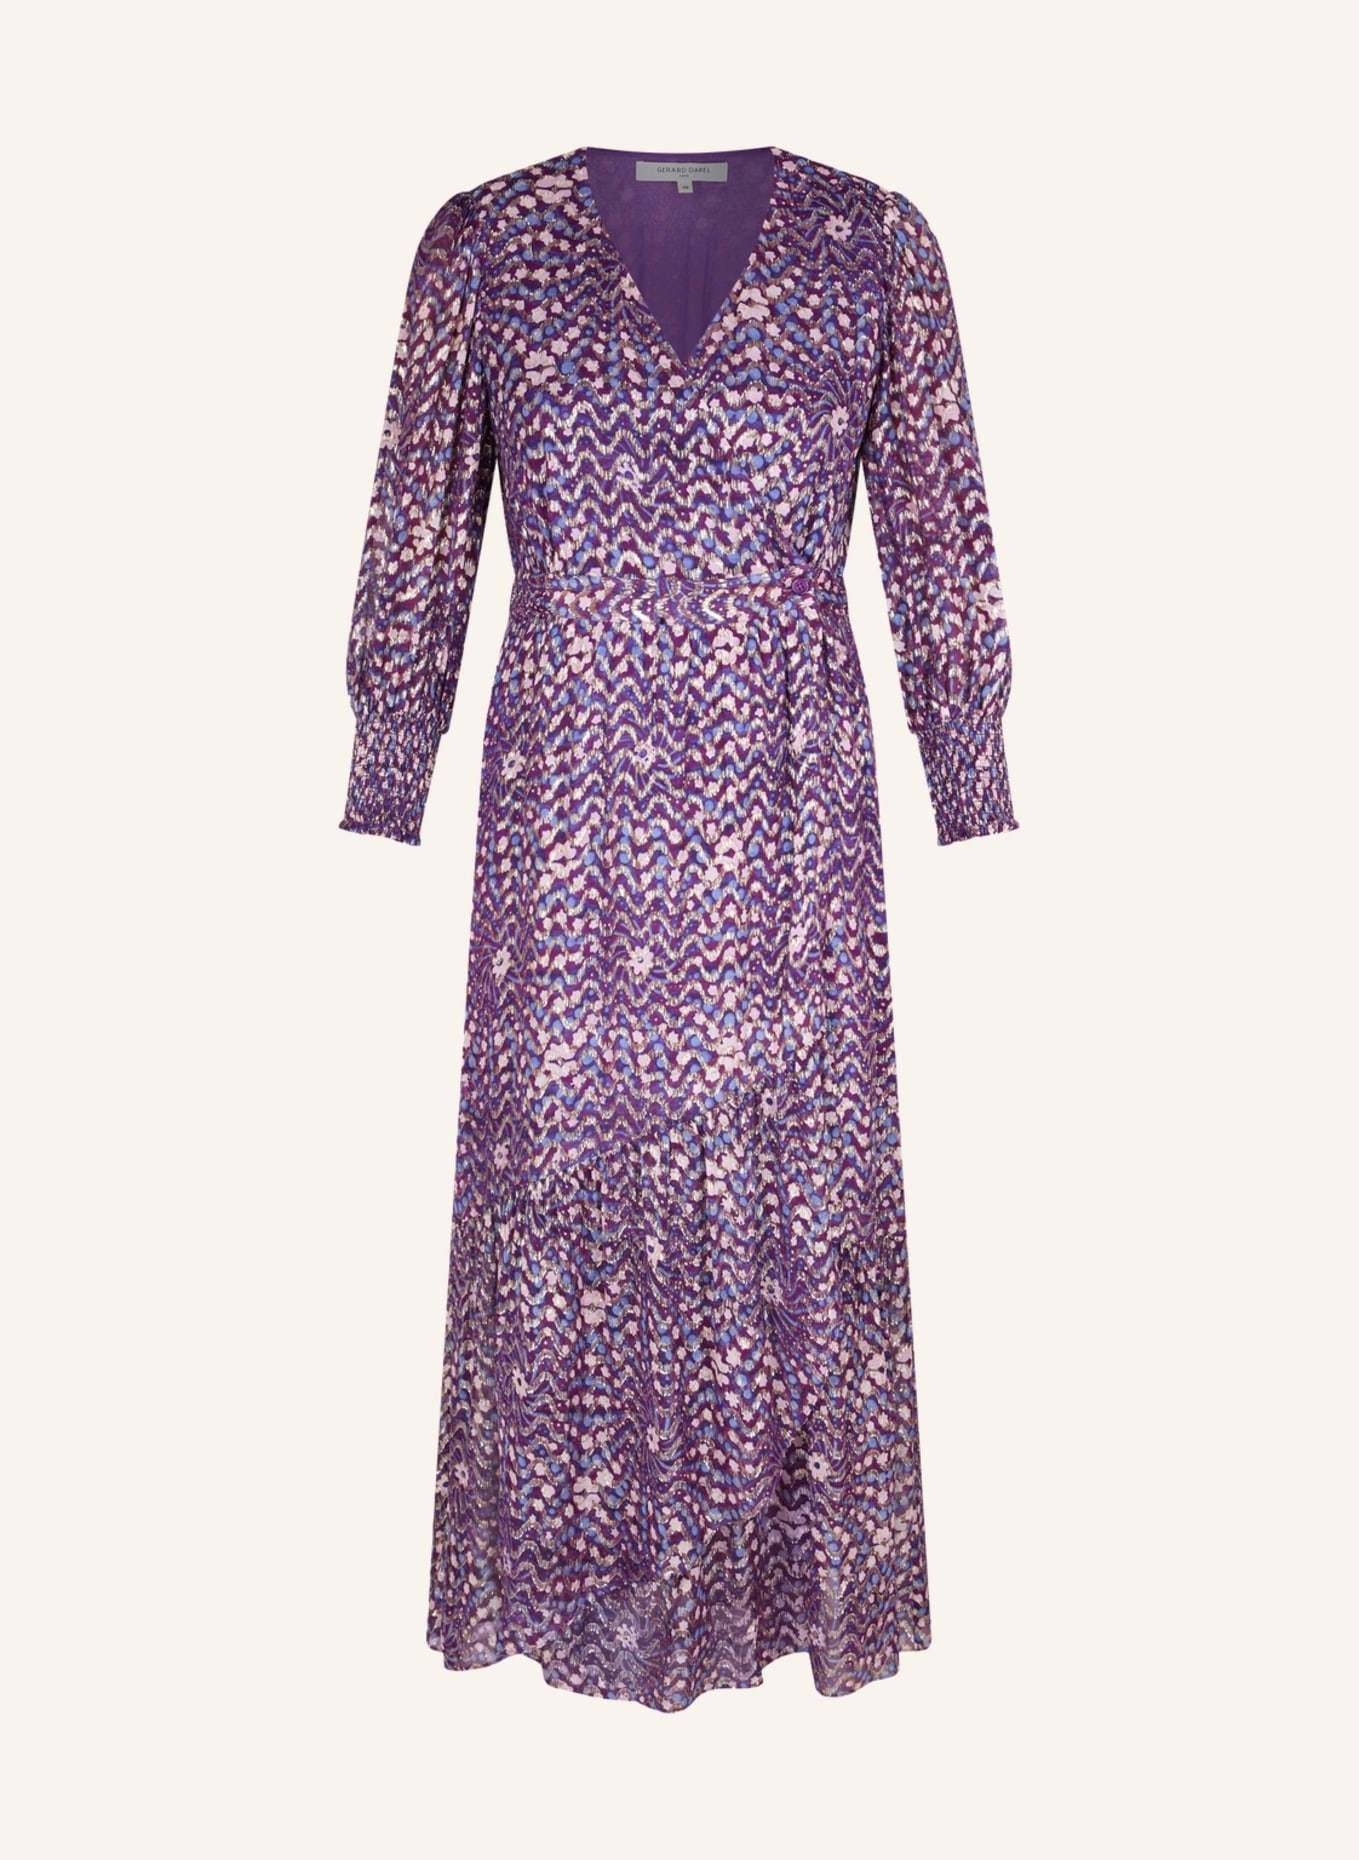 GERARD DAREL Kleid ENZA, Farbe: LILA (Bild 1)